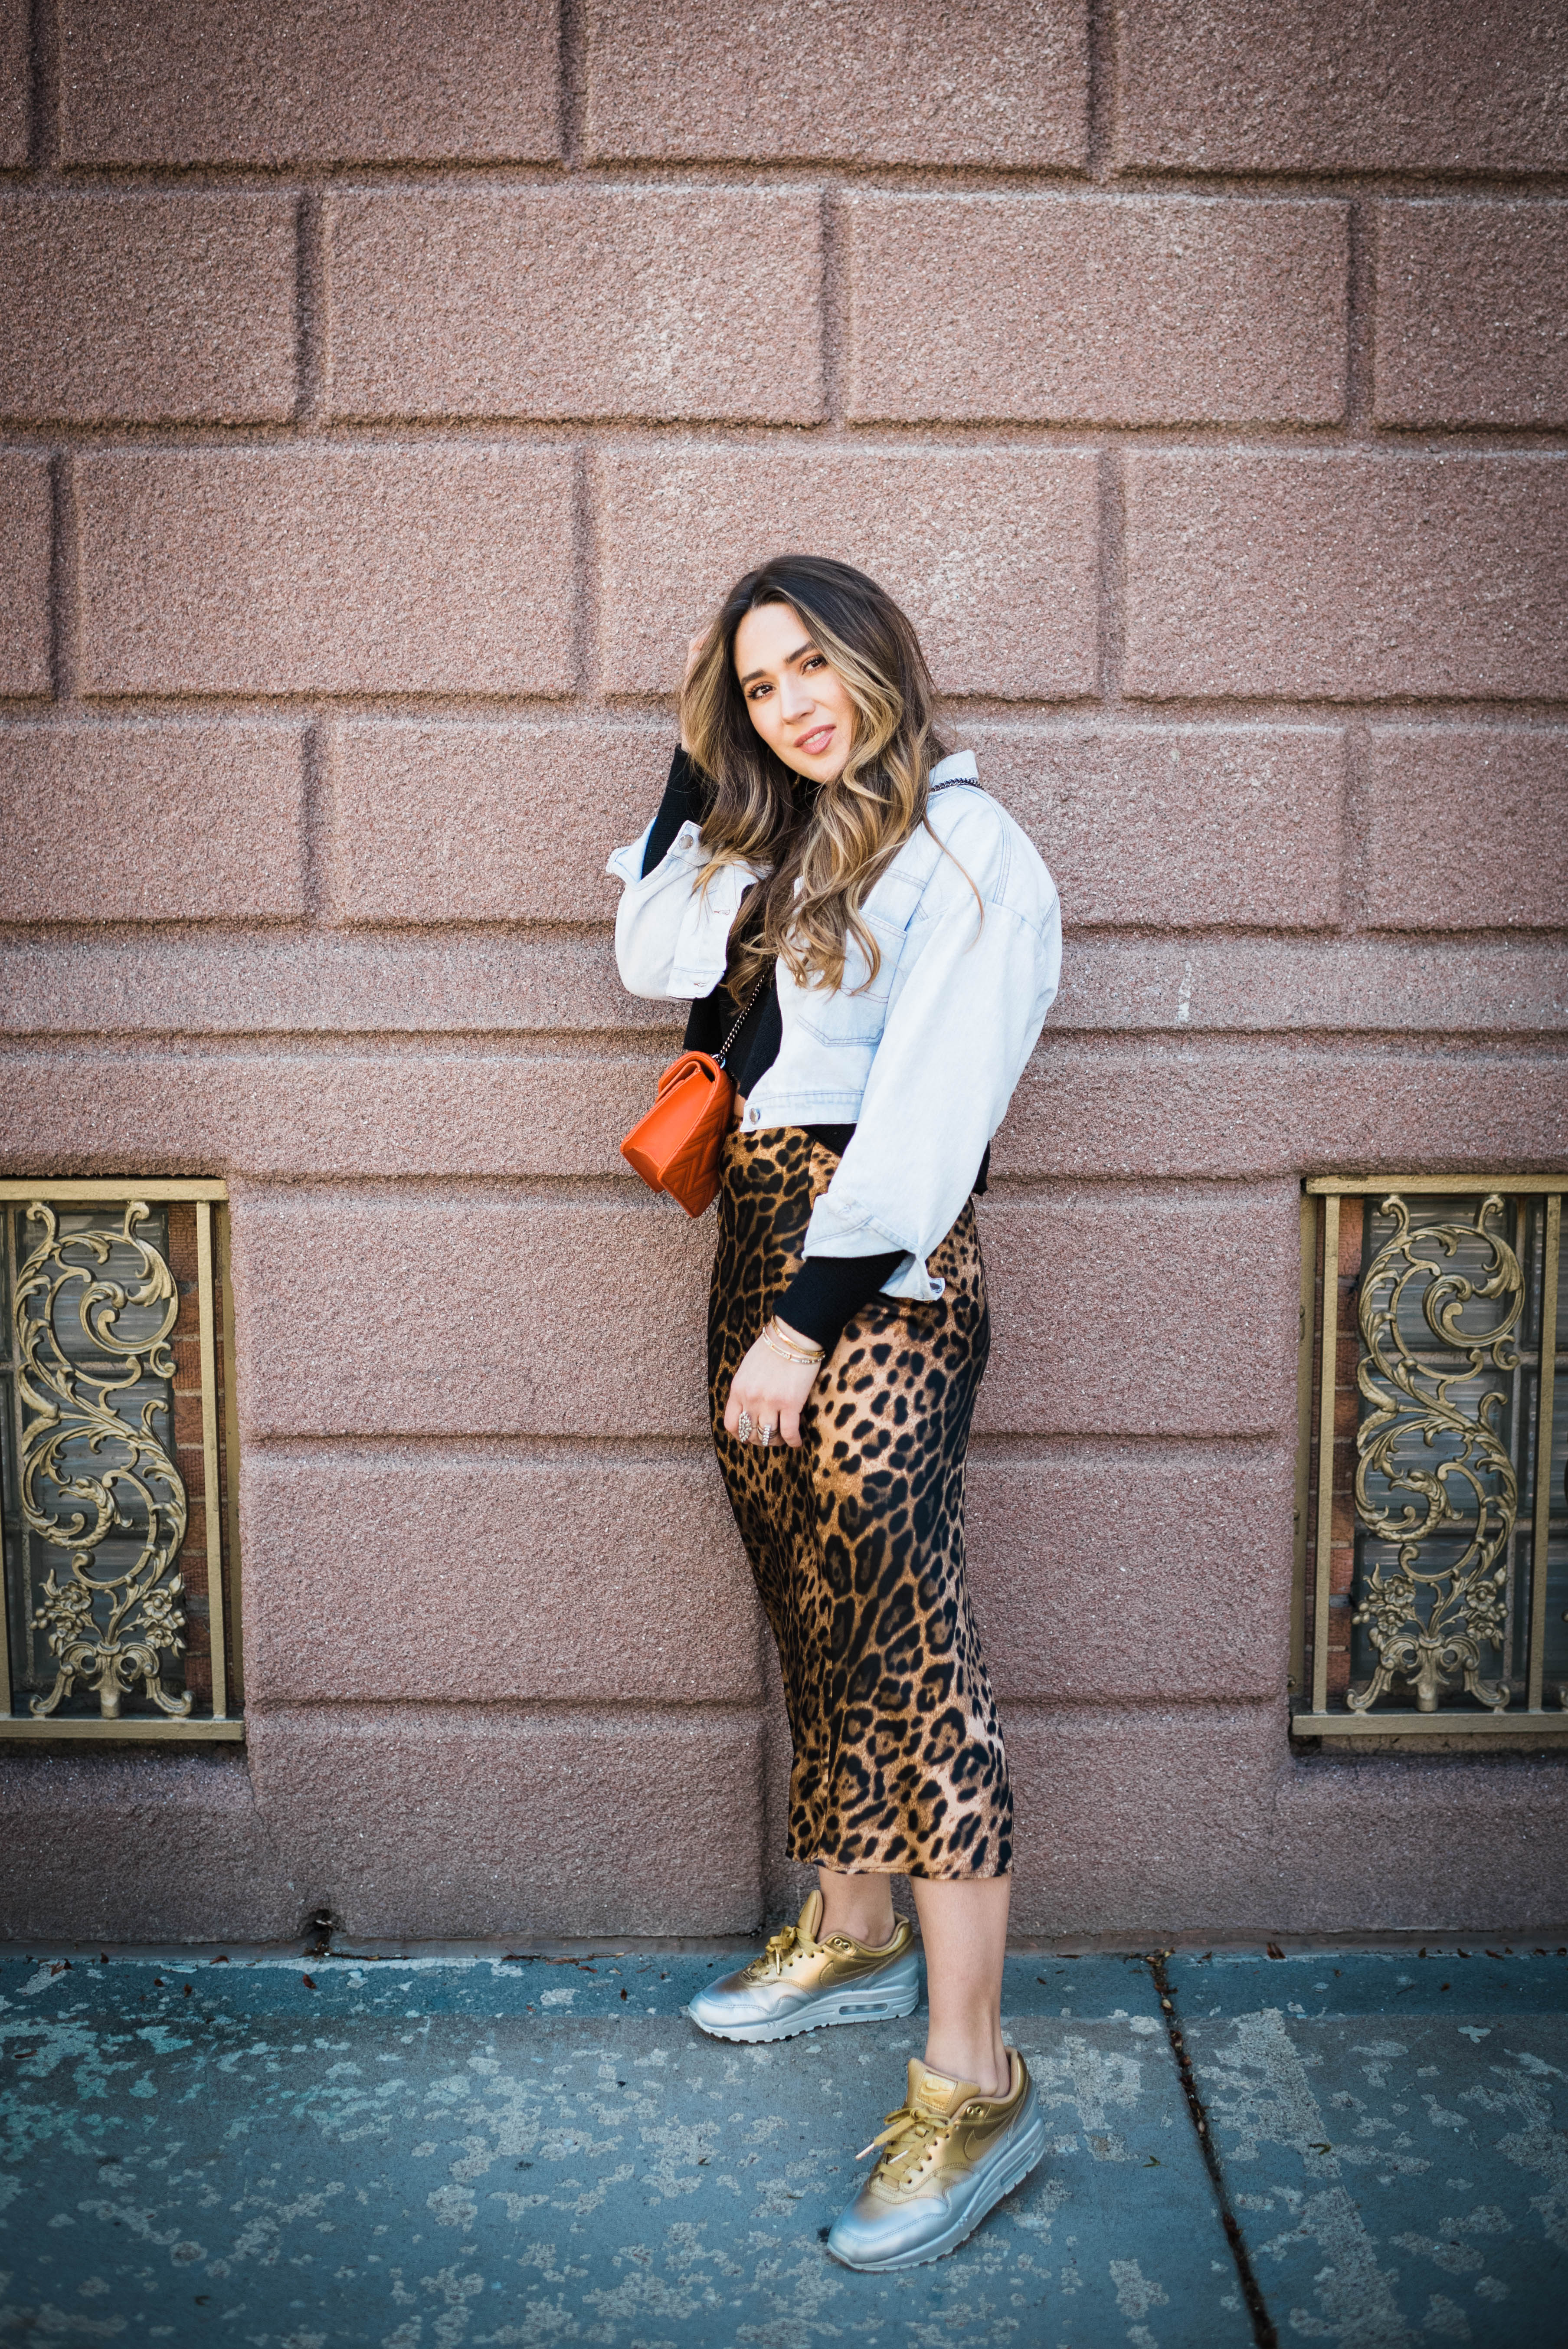 cheetah-skirt-nike-sneakers-jean-jacket-casual-cool-street-style-look